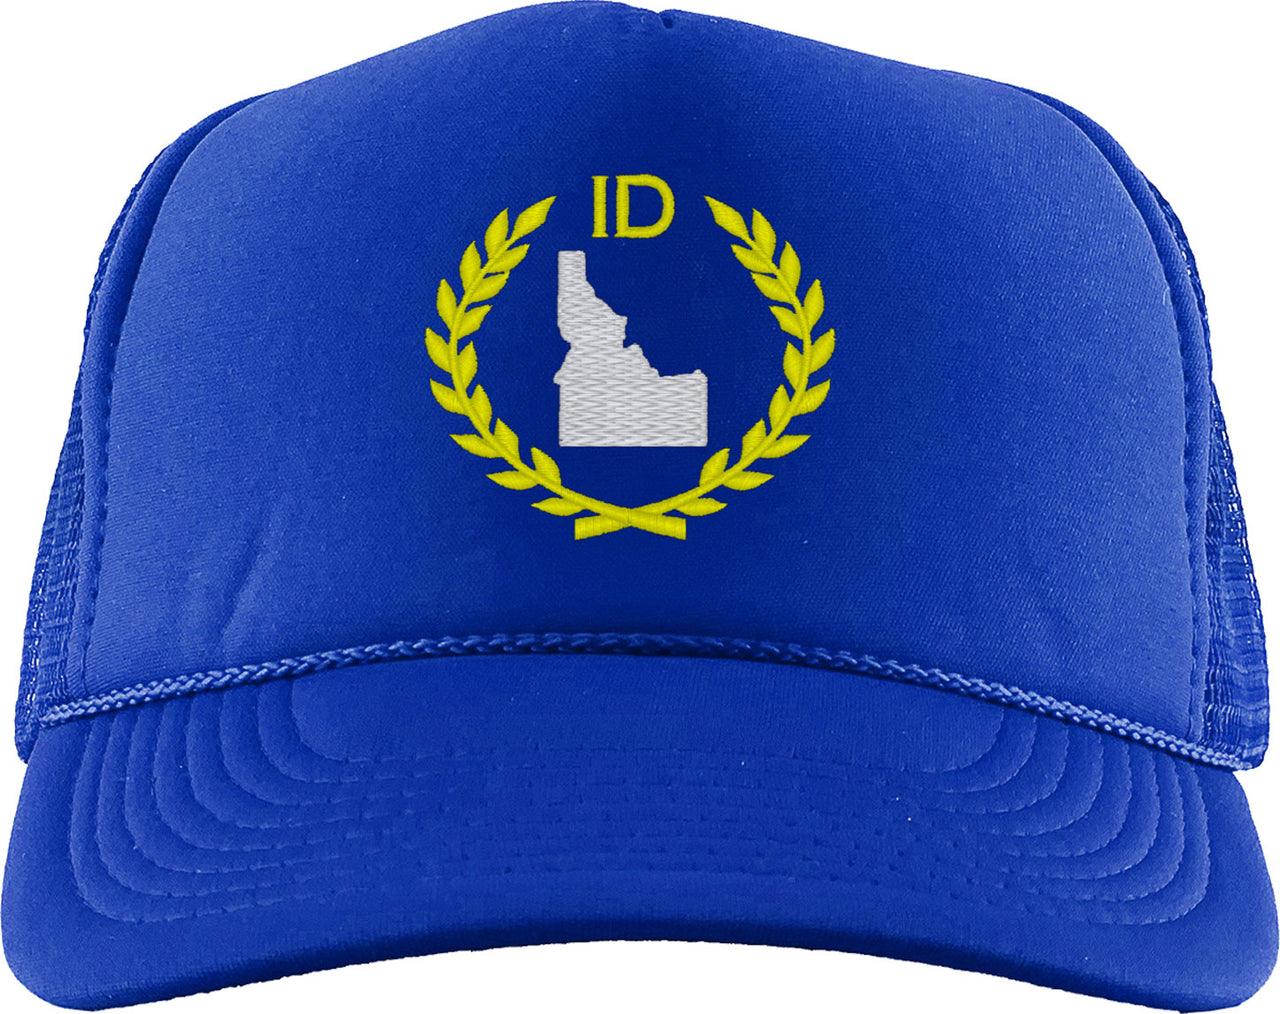 Idaho State Foam Trucker Hat